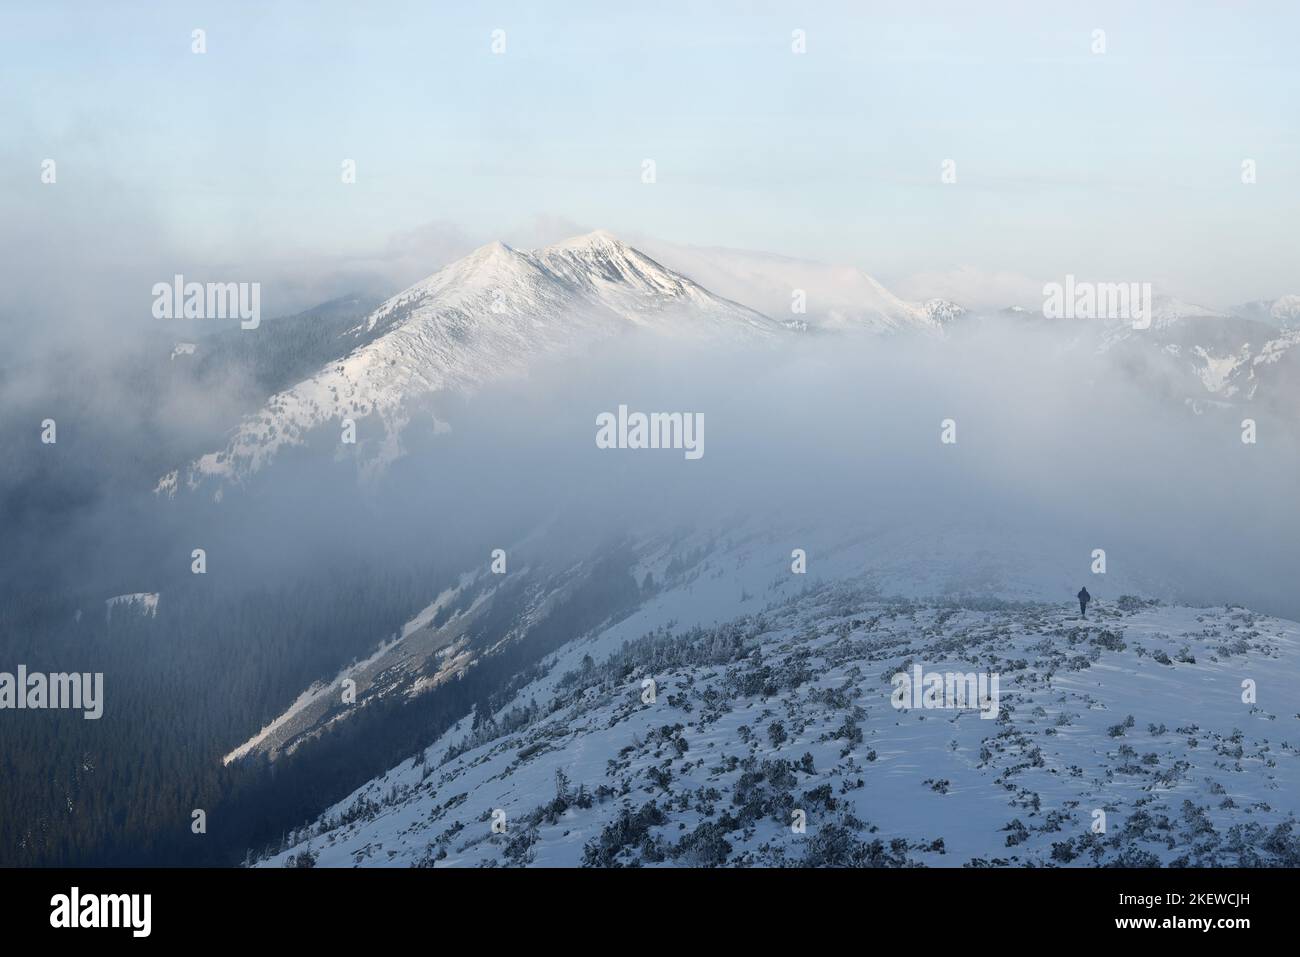 Paysage de montagne d'hiver avec un pic enneigé et un homme sur la crête de la crête lors d'une randonnée d'hiver extrême Banque D'Images